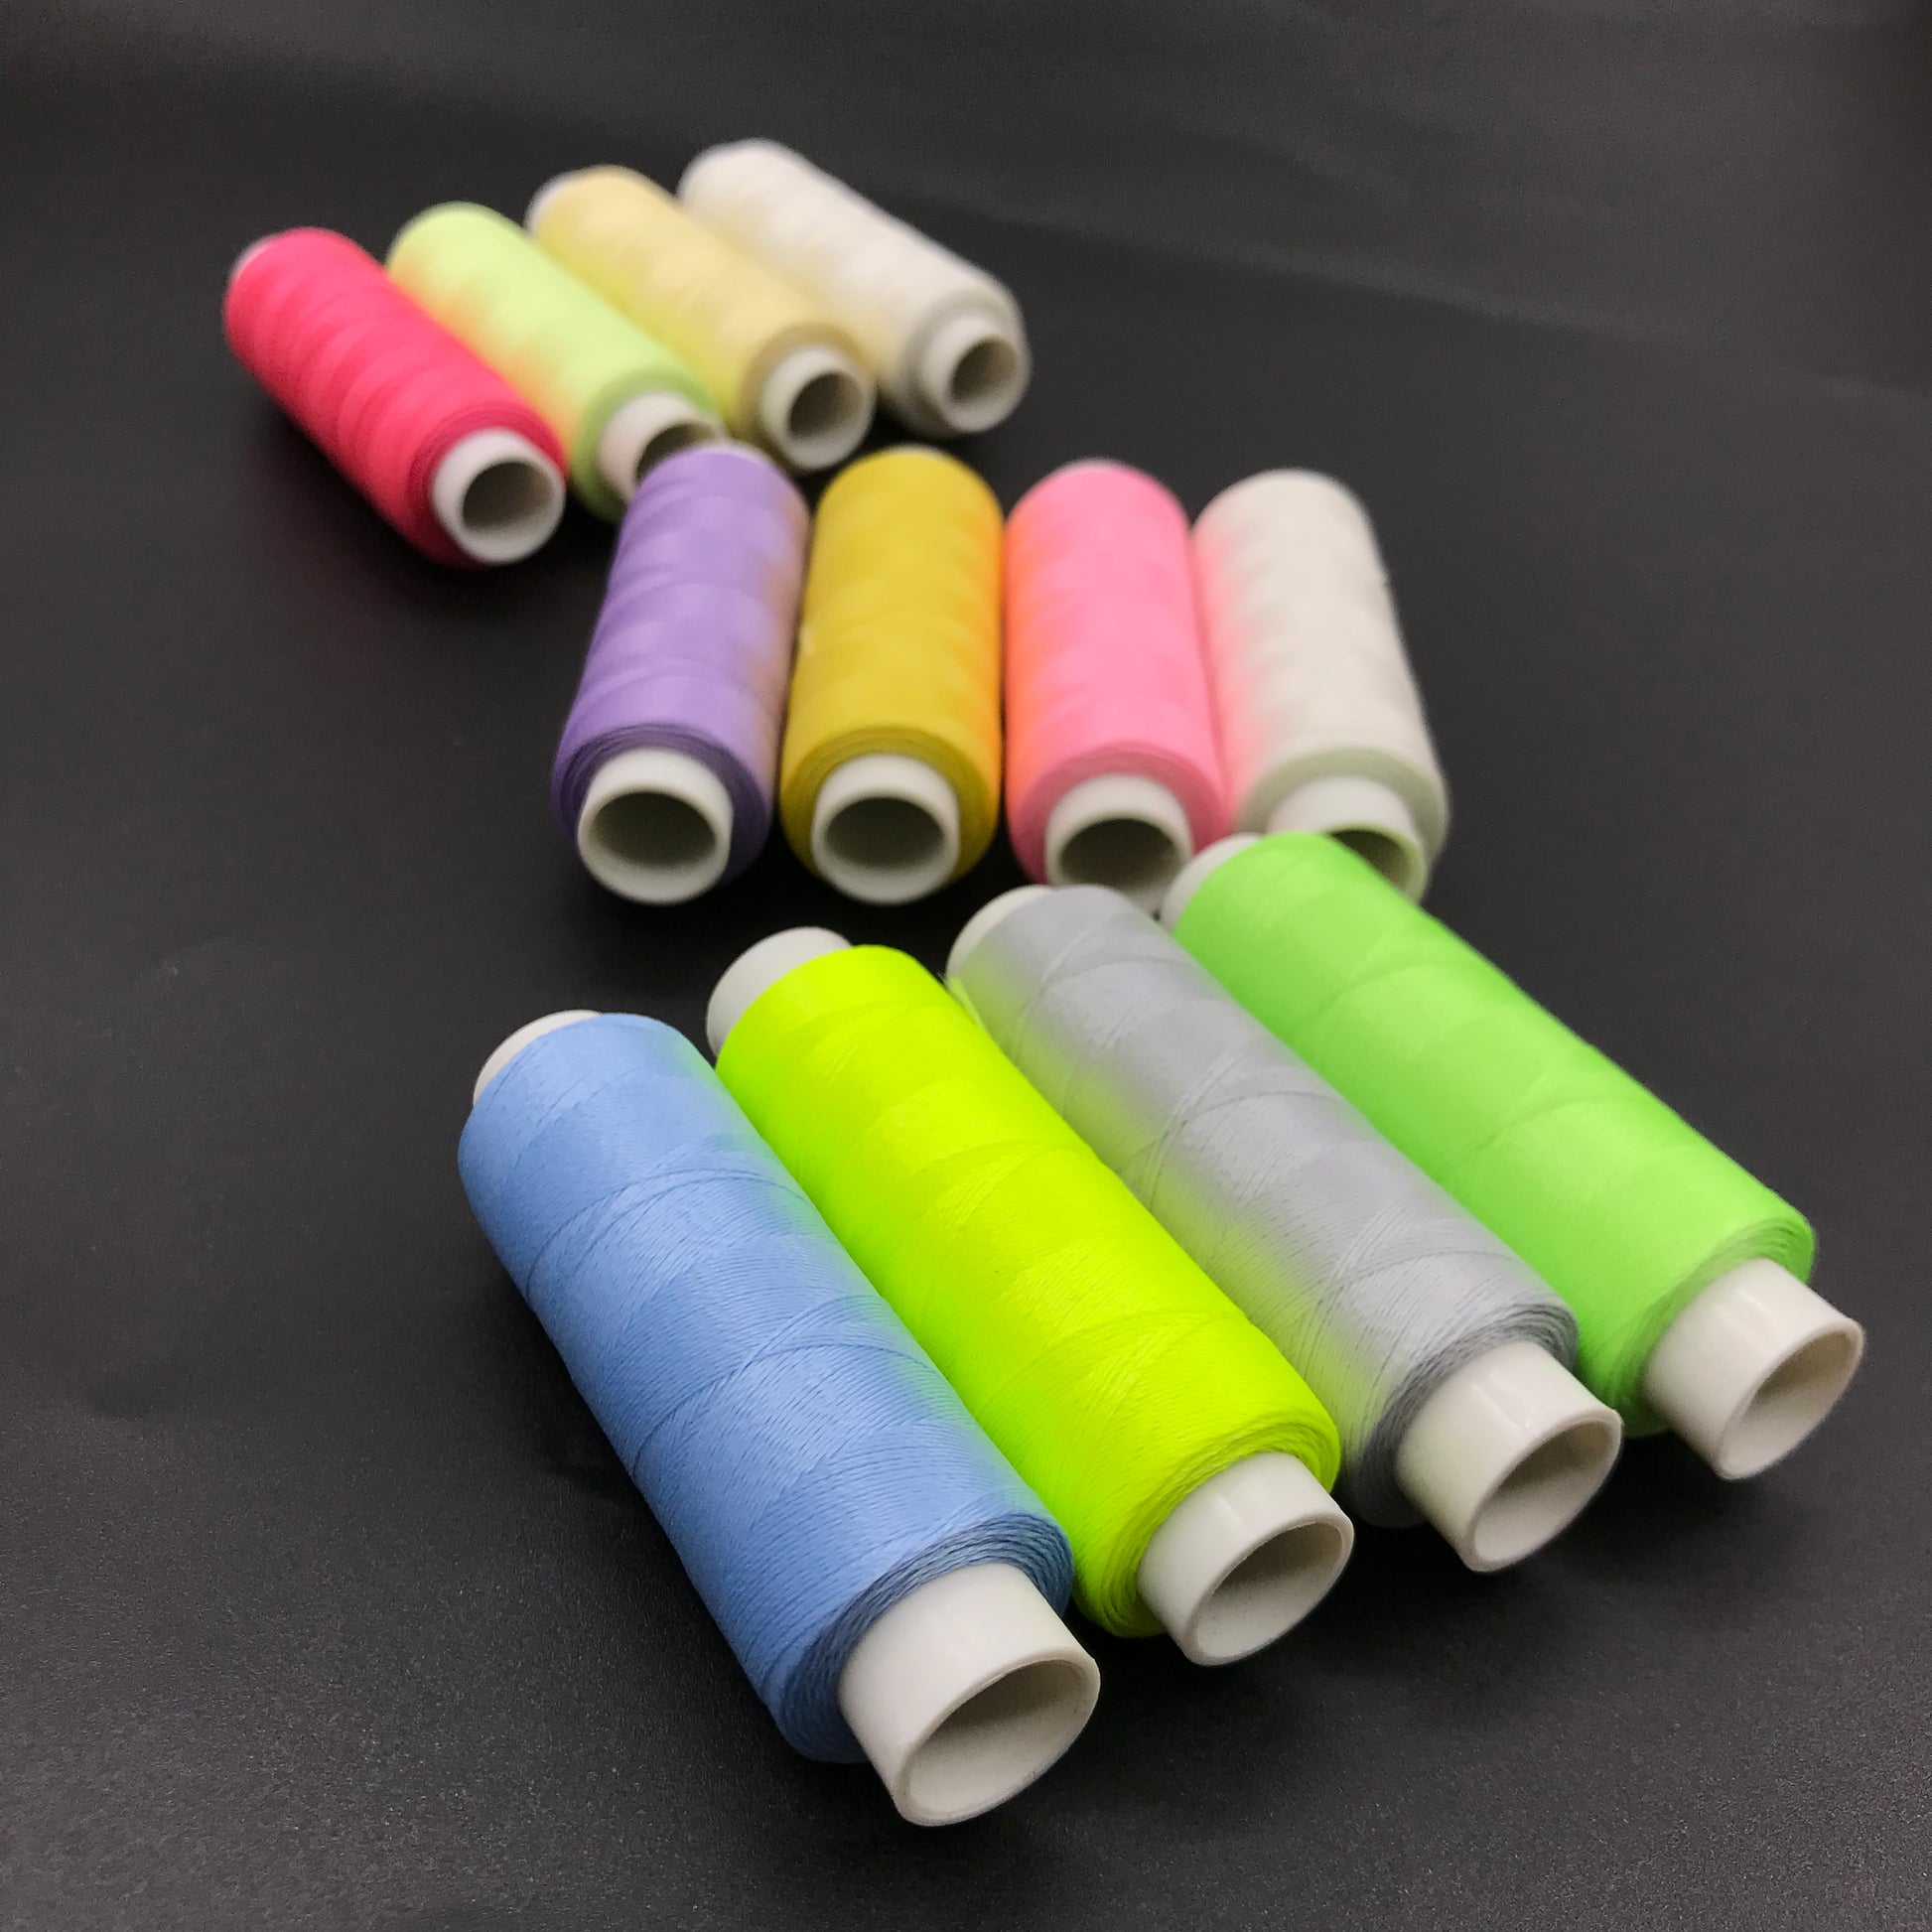 Luminous fluorescent Embroidery Thread Kit